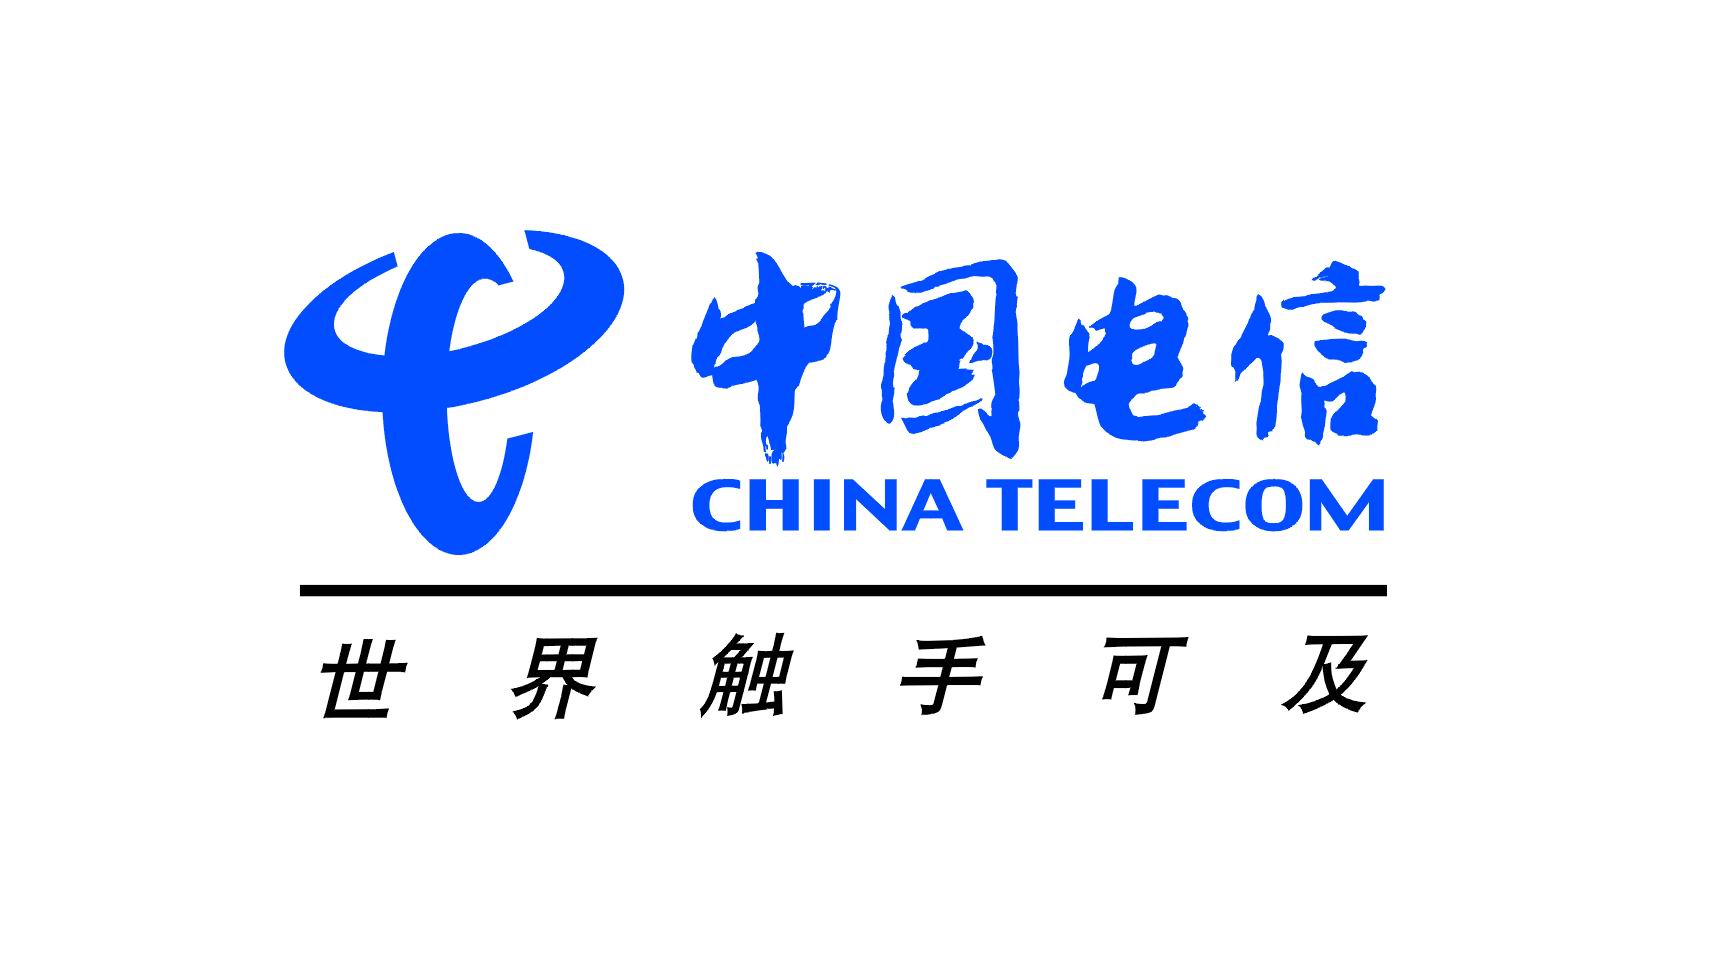 中国电信，中国主要电信运营商